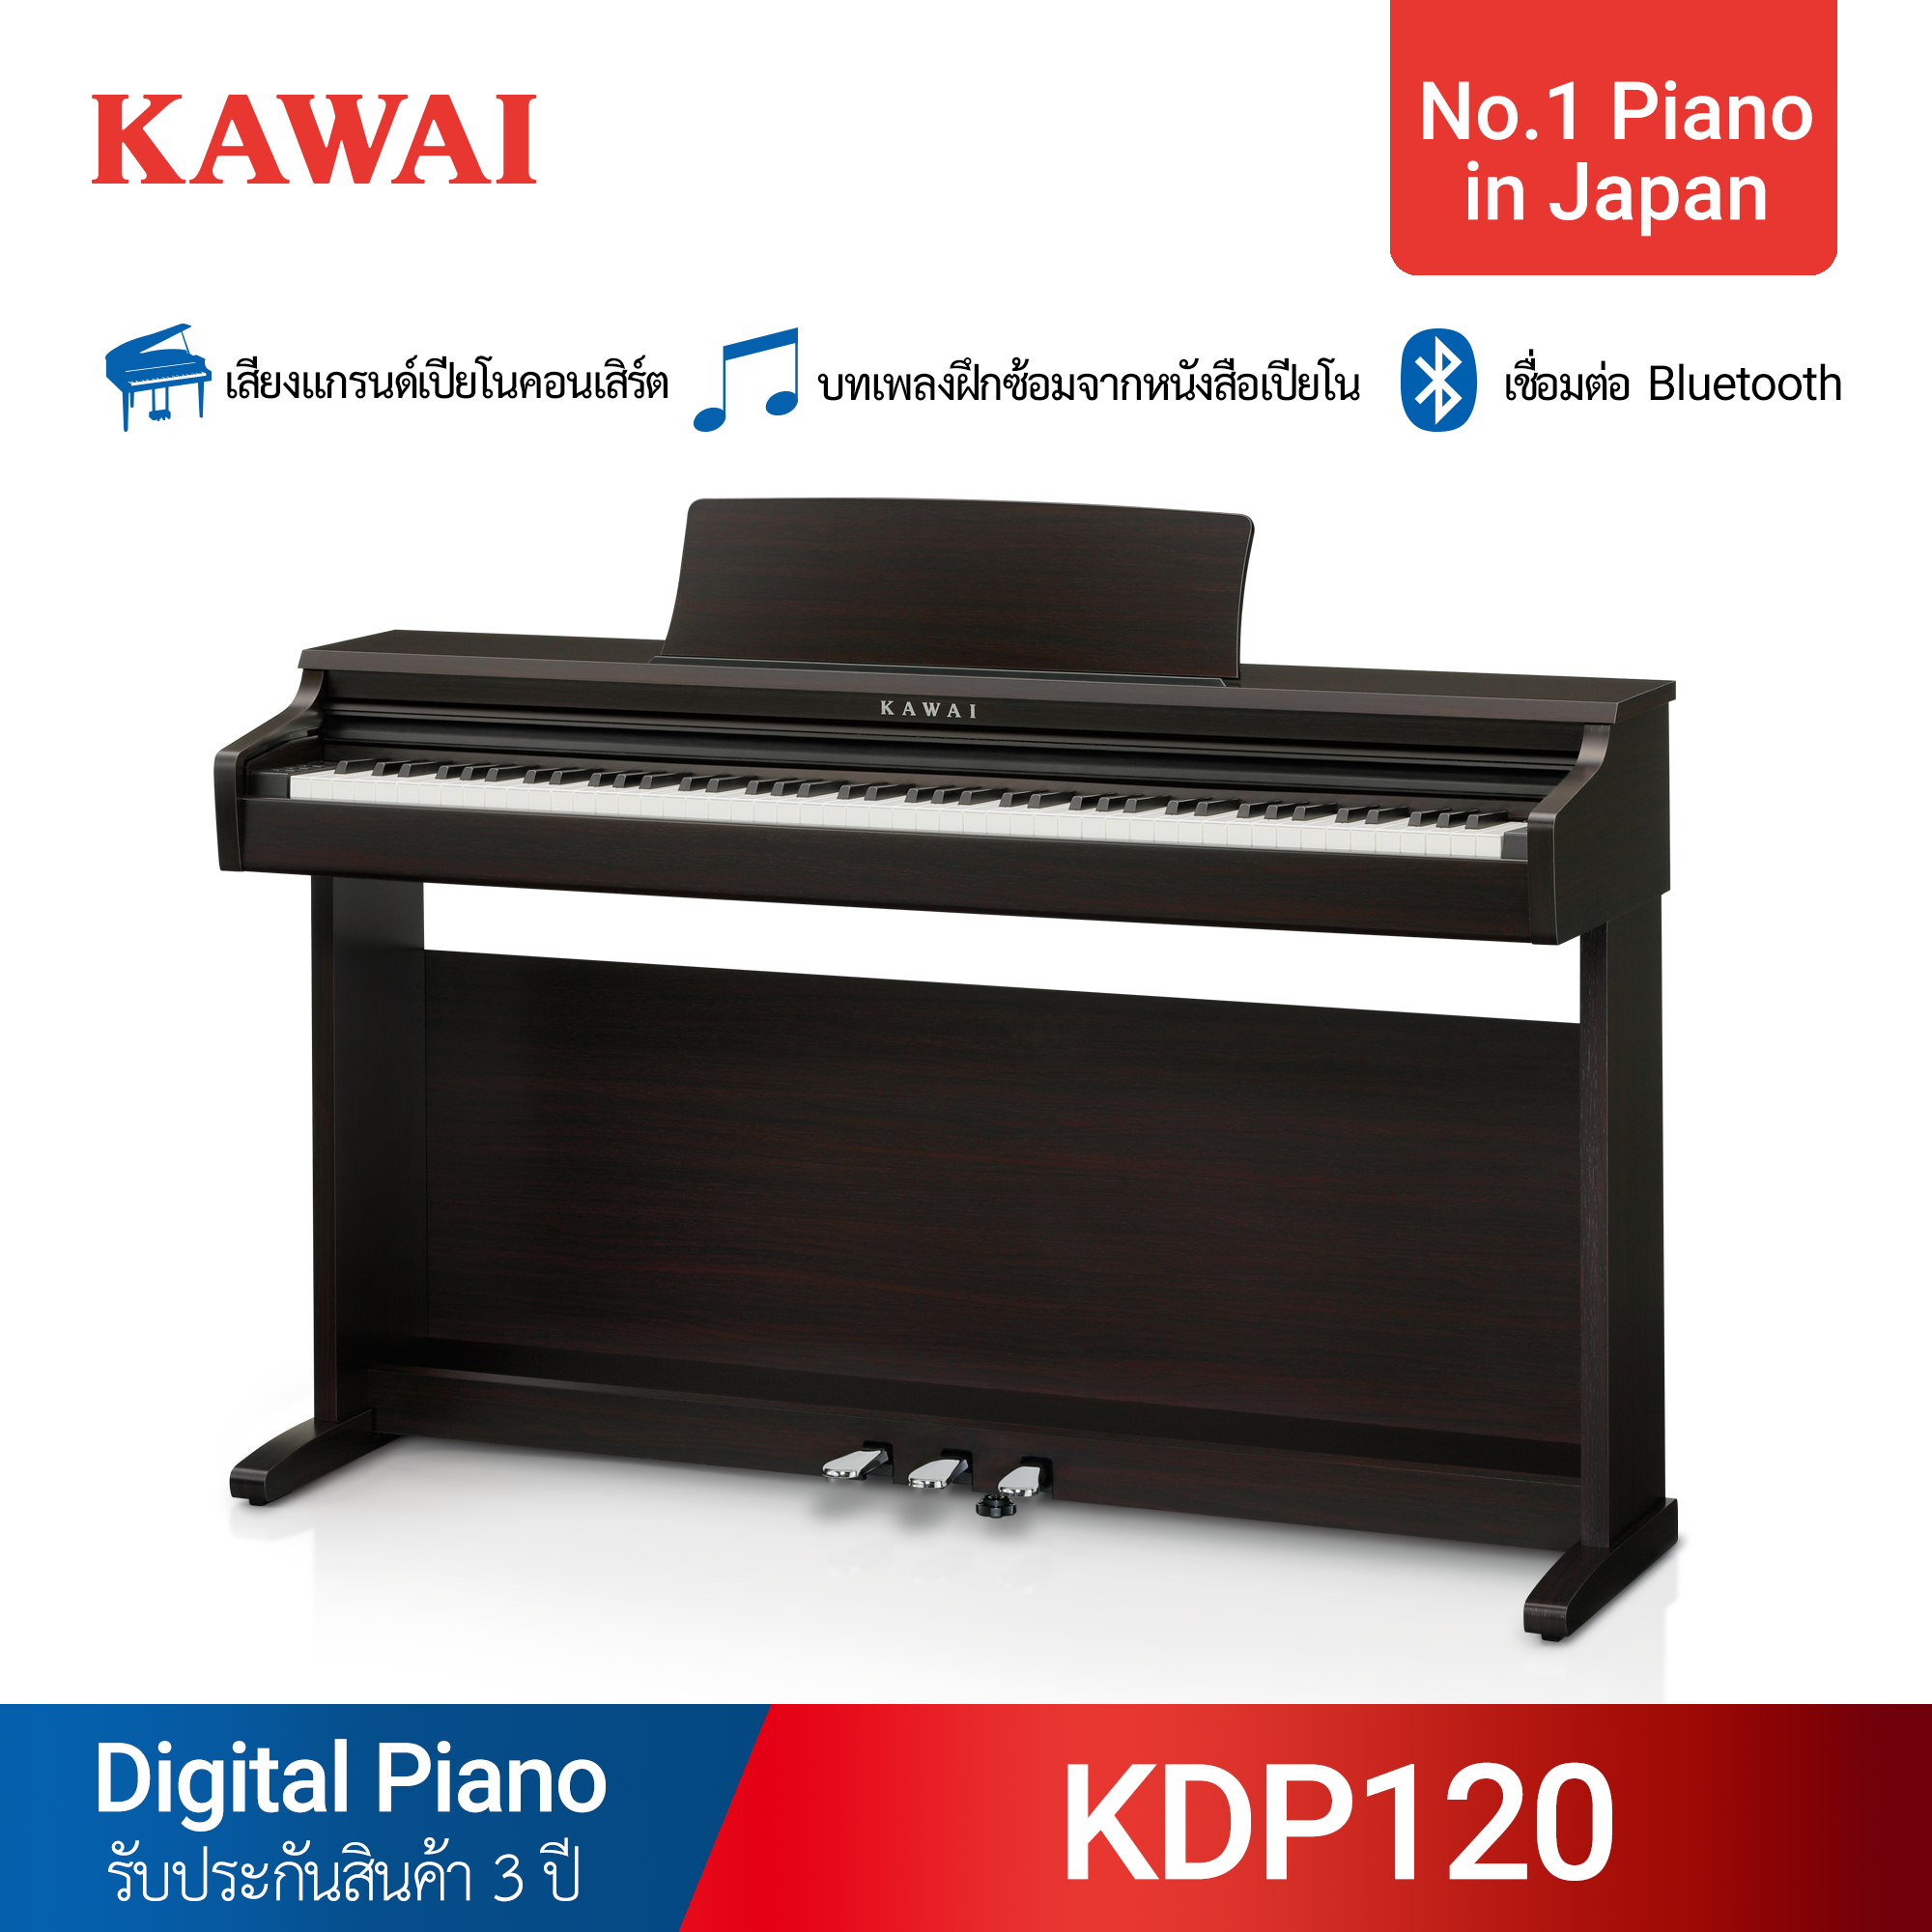 เปียโนไฟฟ้า Kawai KDP120 พร้อมเก้าอี้เปียโน รับประกัน 3 ปี ส่งฟรีทั่วประเทศ ติดตั้งฟรีเฉพาะกรุงเทพ